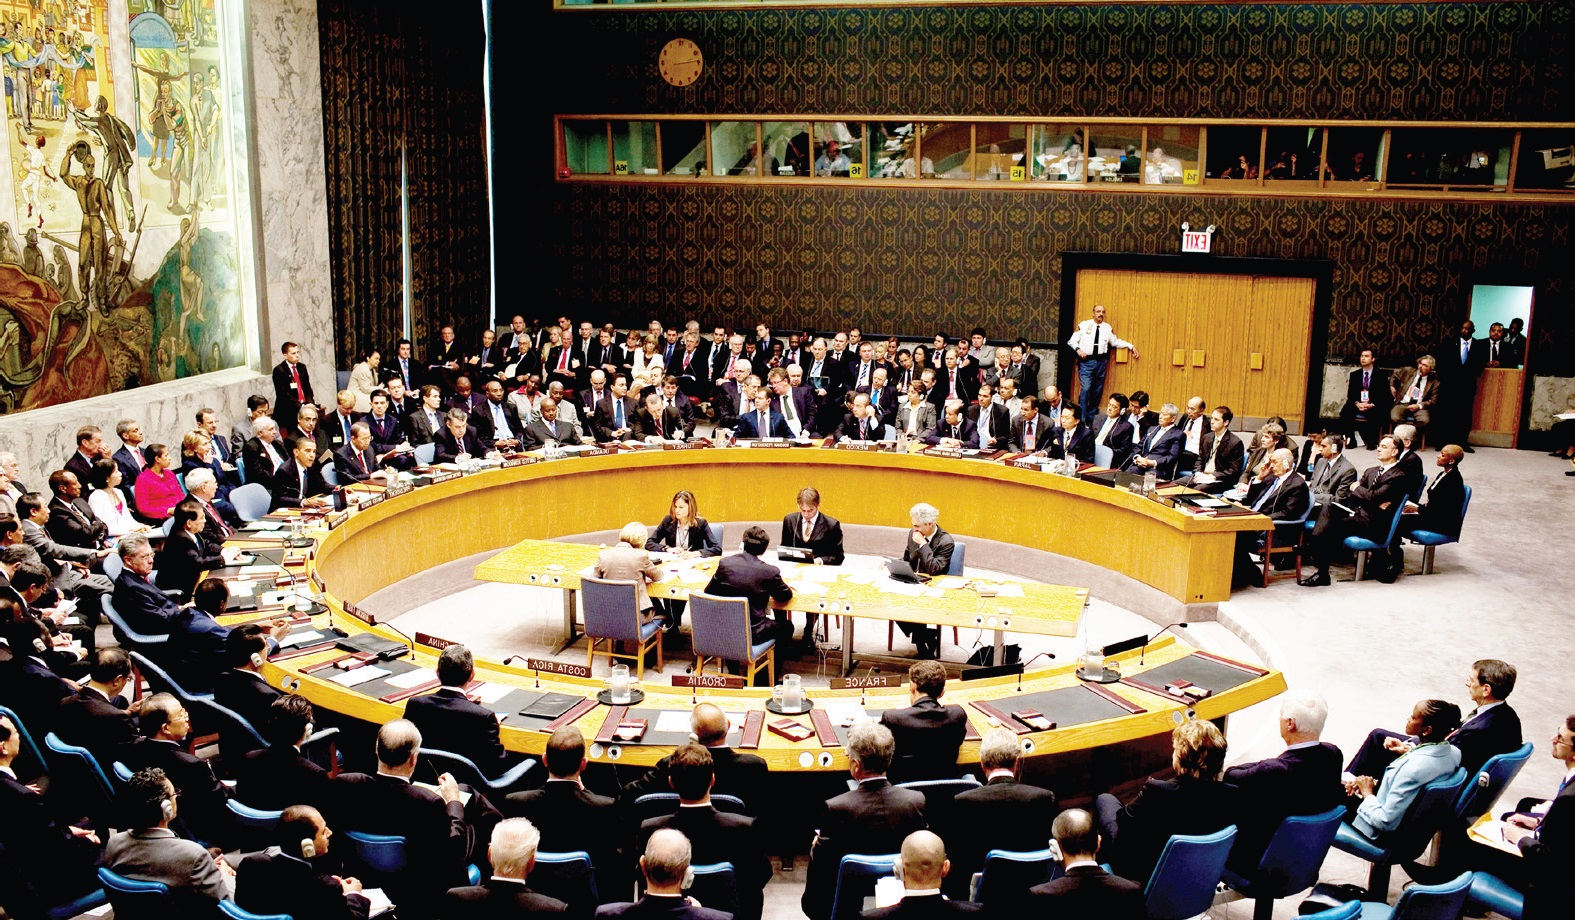   ‎بث مباشر لجلسة الجمعية العامة للأمم المتحدة بشأن القضية السورية